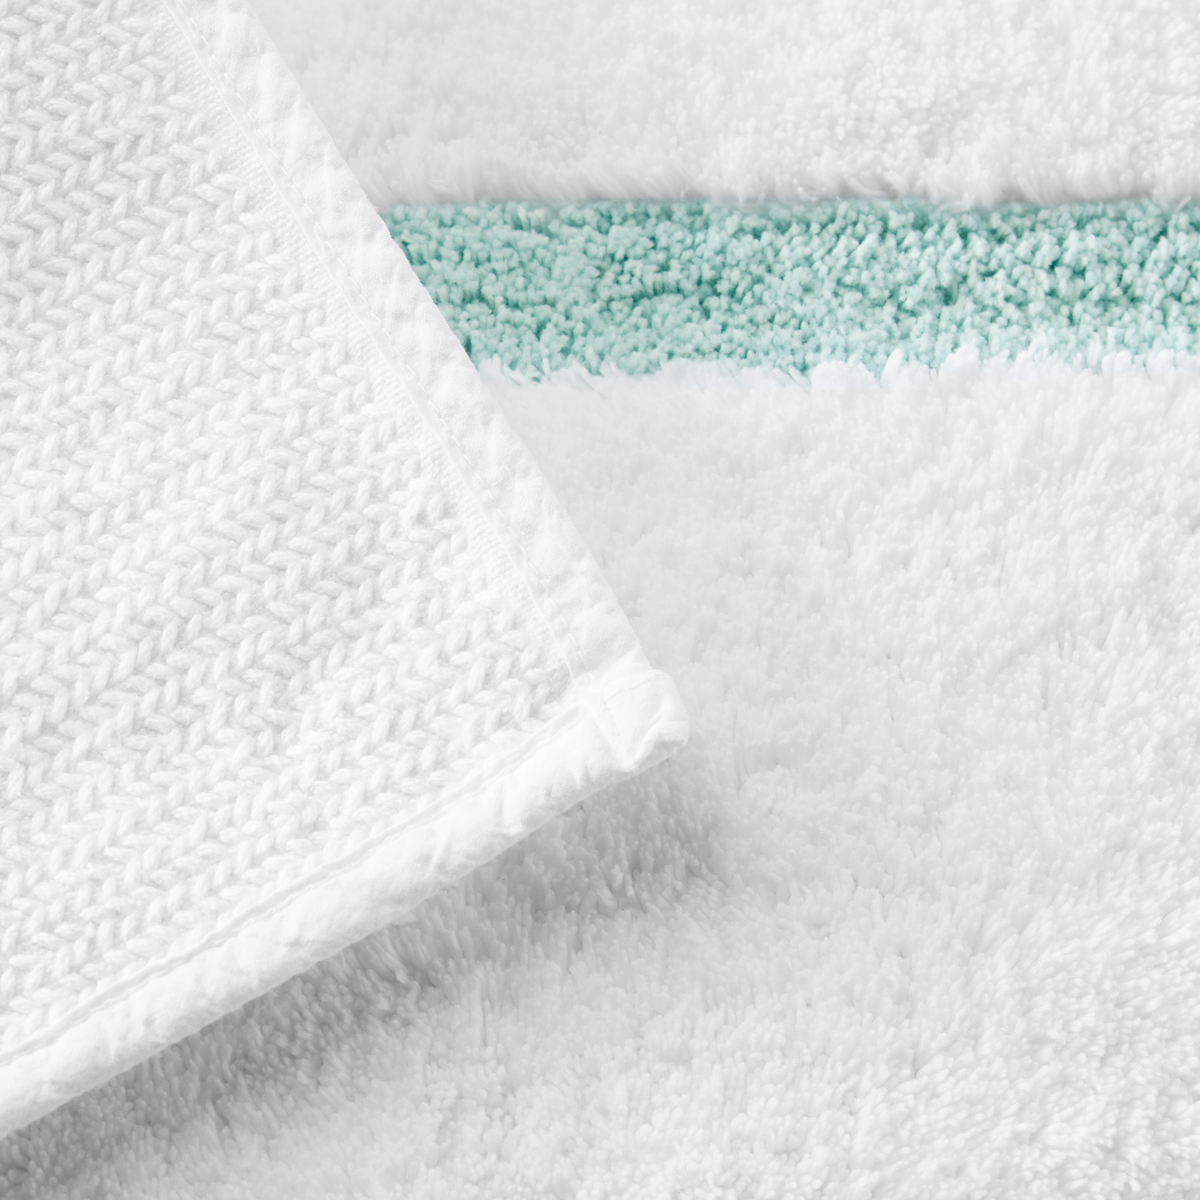 Underside View of Sferra Lindo Bath Rugs in White Aqua Color